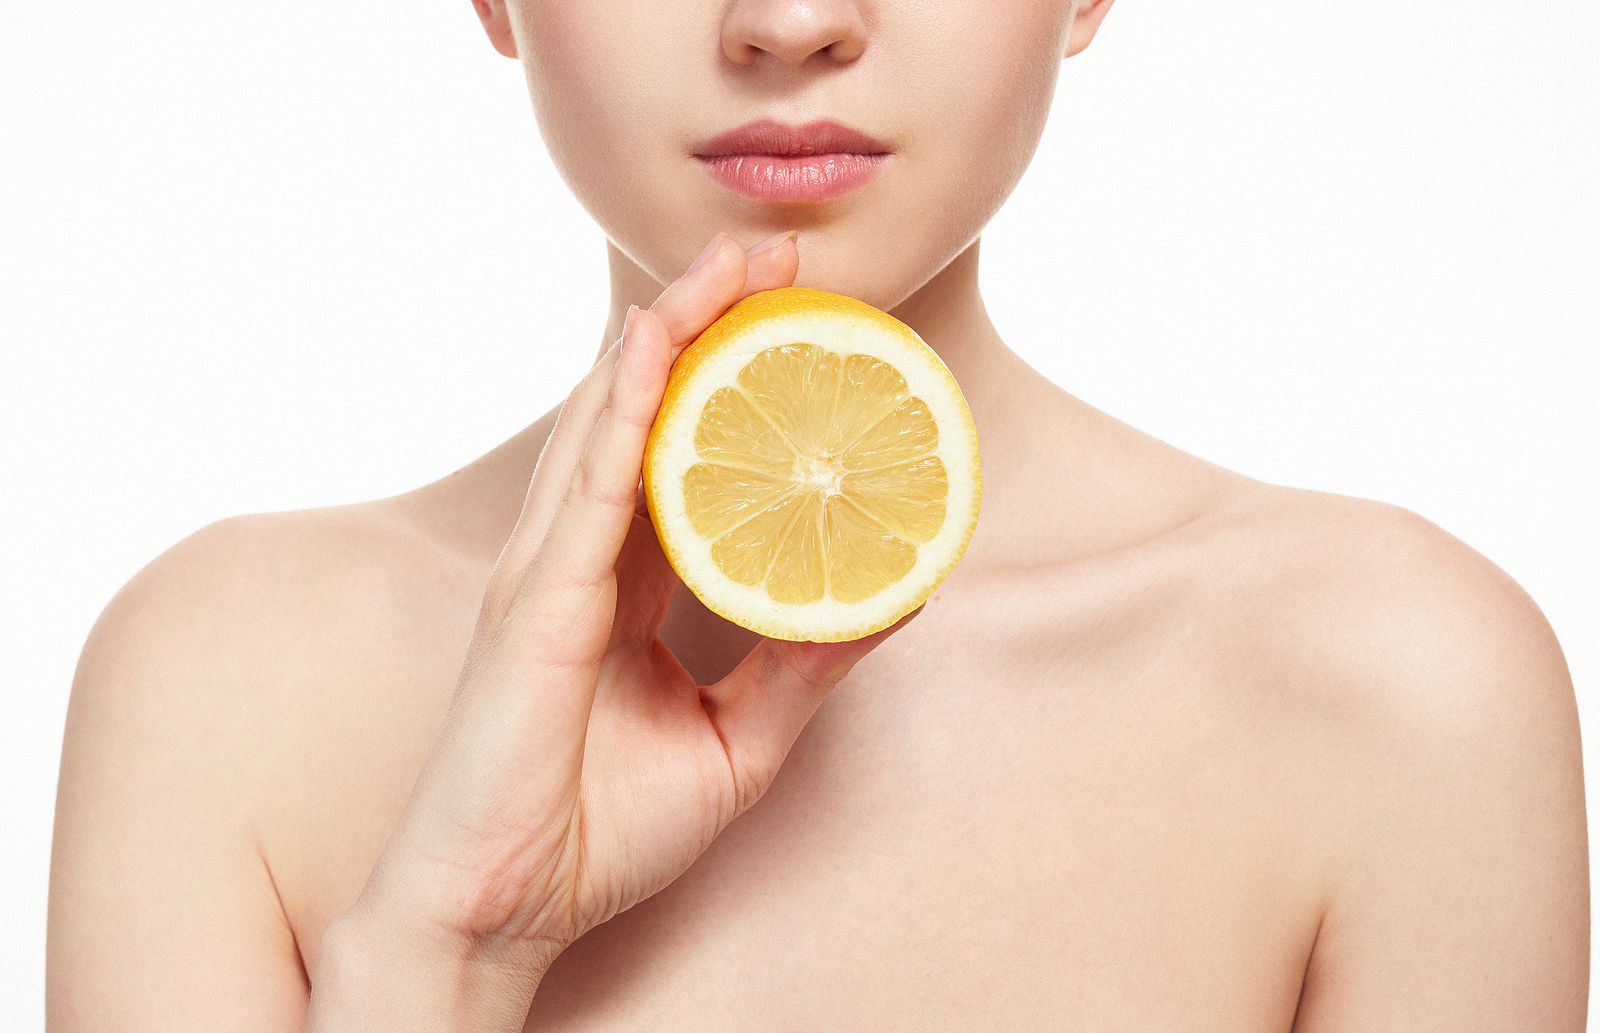 6 usos sorprendentes del limón que seguro desconocías Foto: bigstock